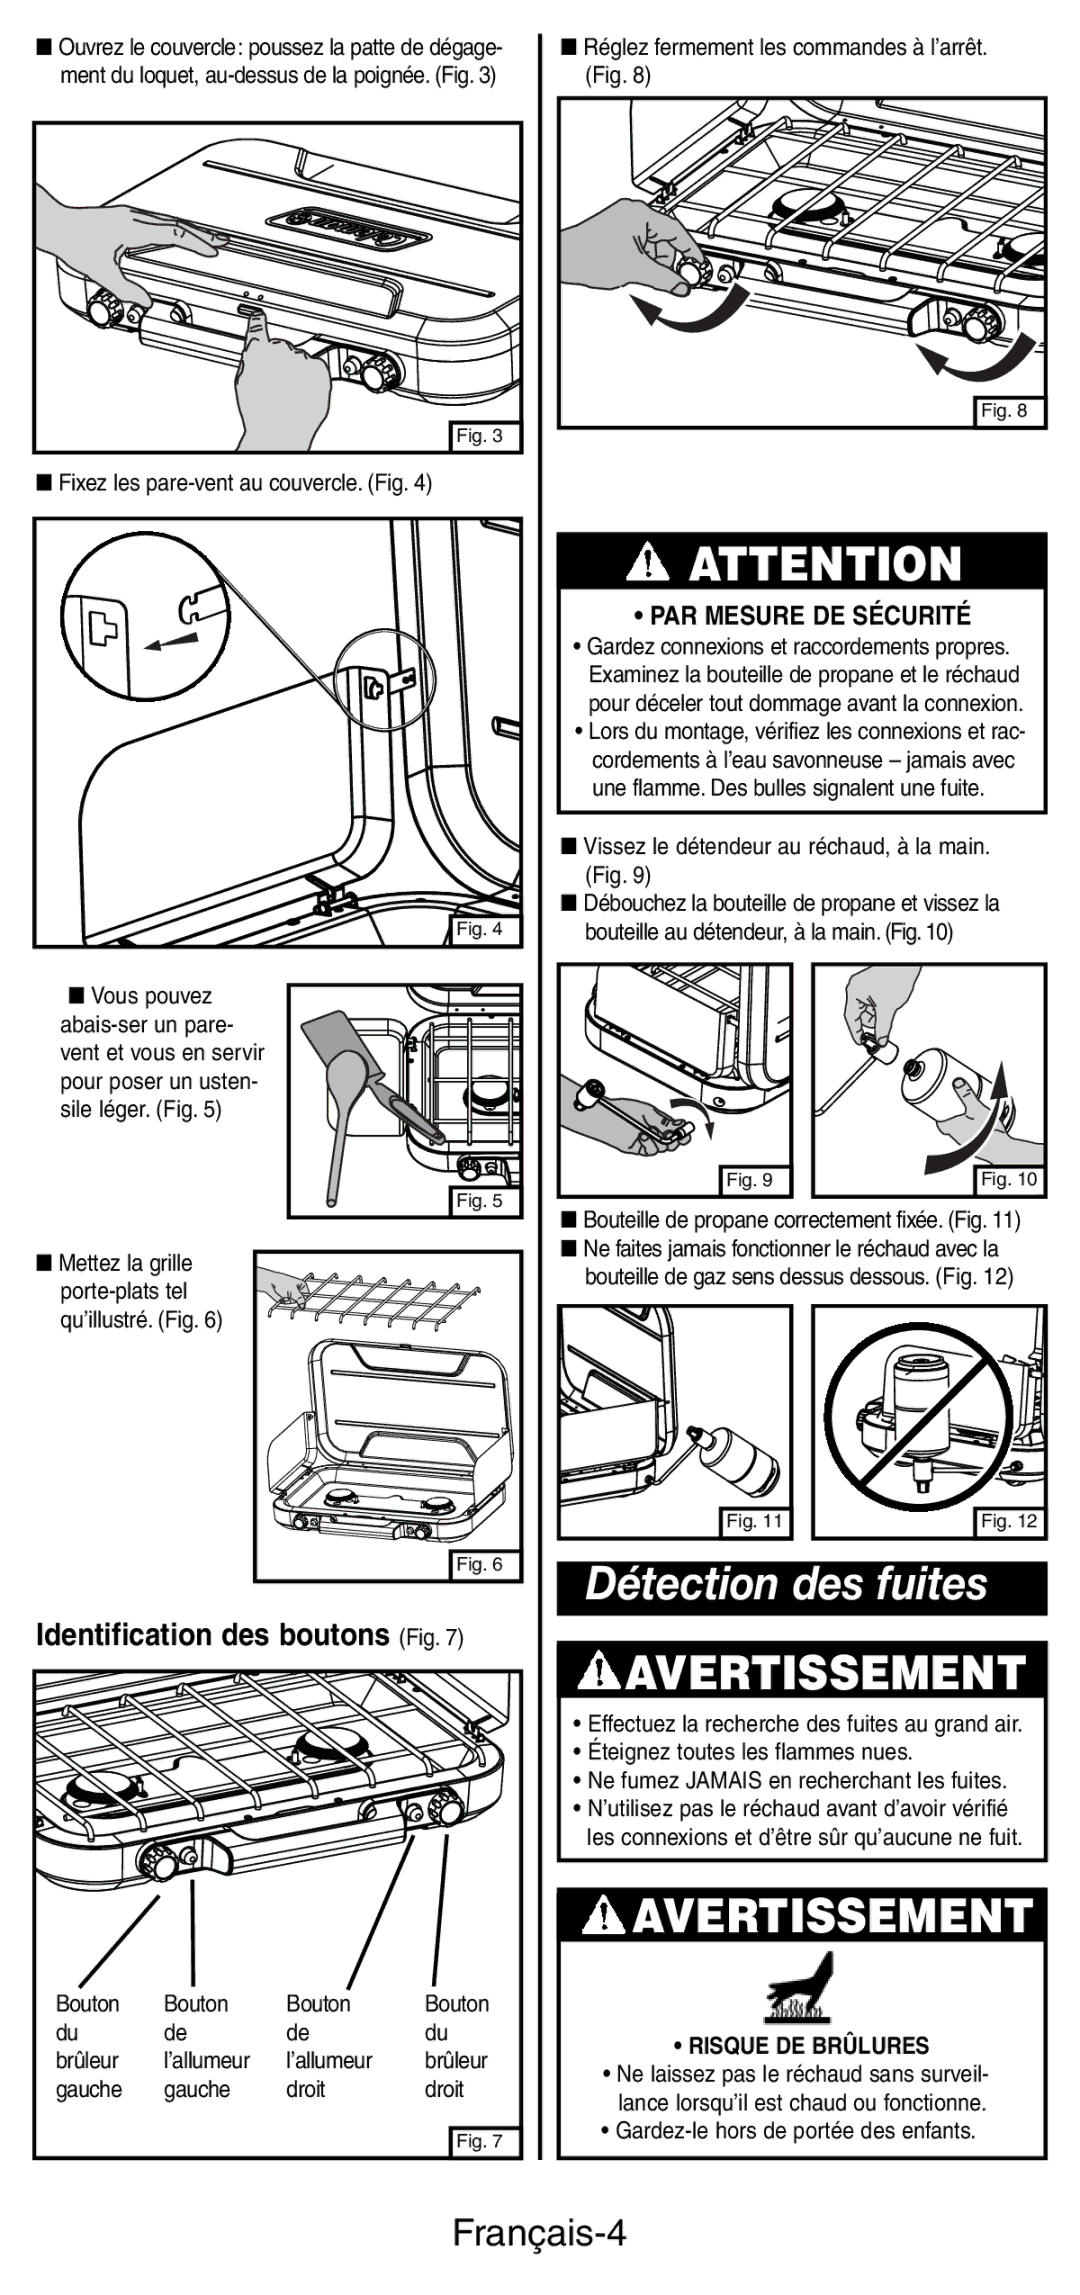 Coleman 5441 Series manual Détection des fuites, Français-4, Identification des boutons Fig 